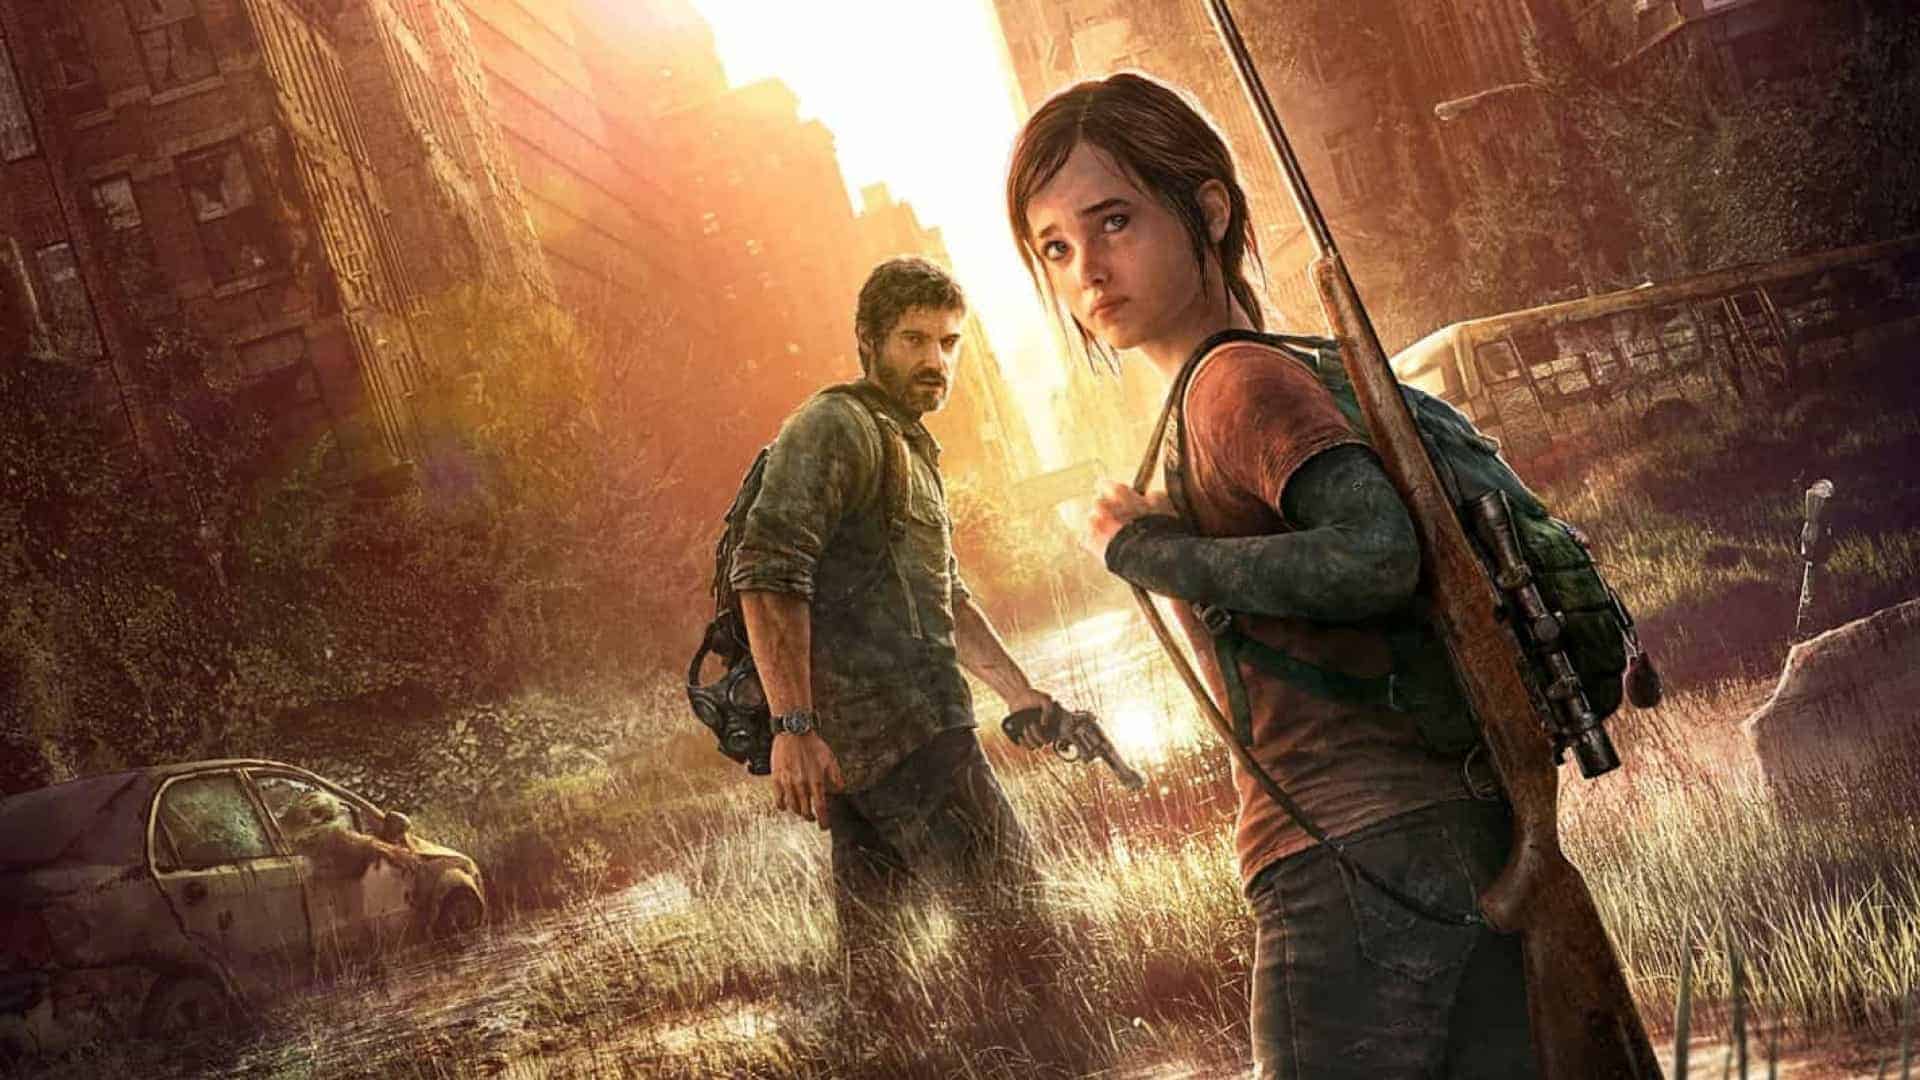 (Mega Leak) The Last Of Us Part 2 كشفت قصة على Reddit!؟